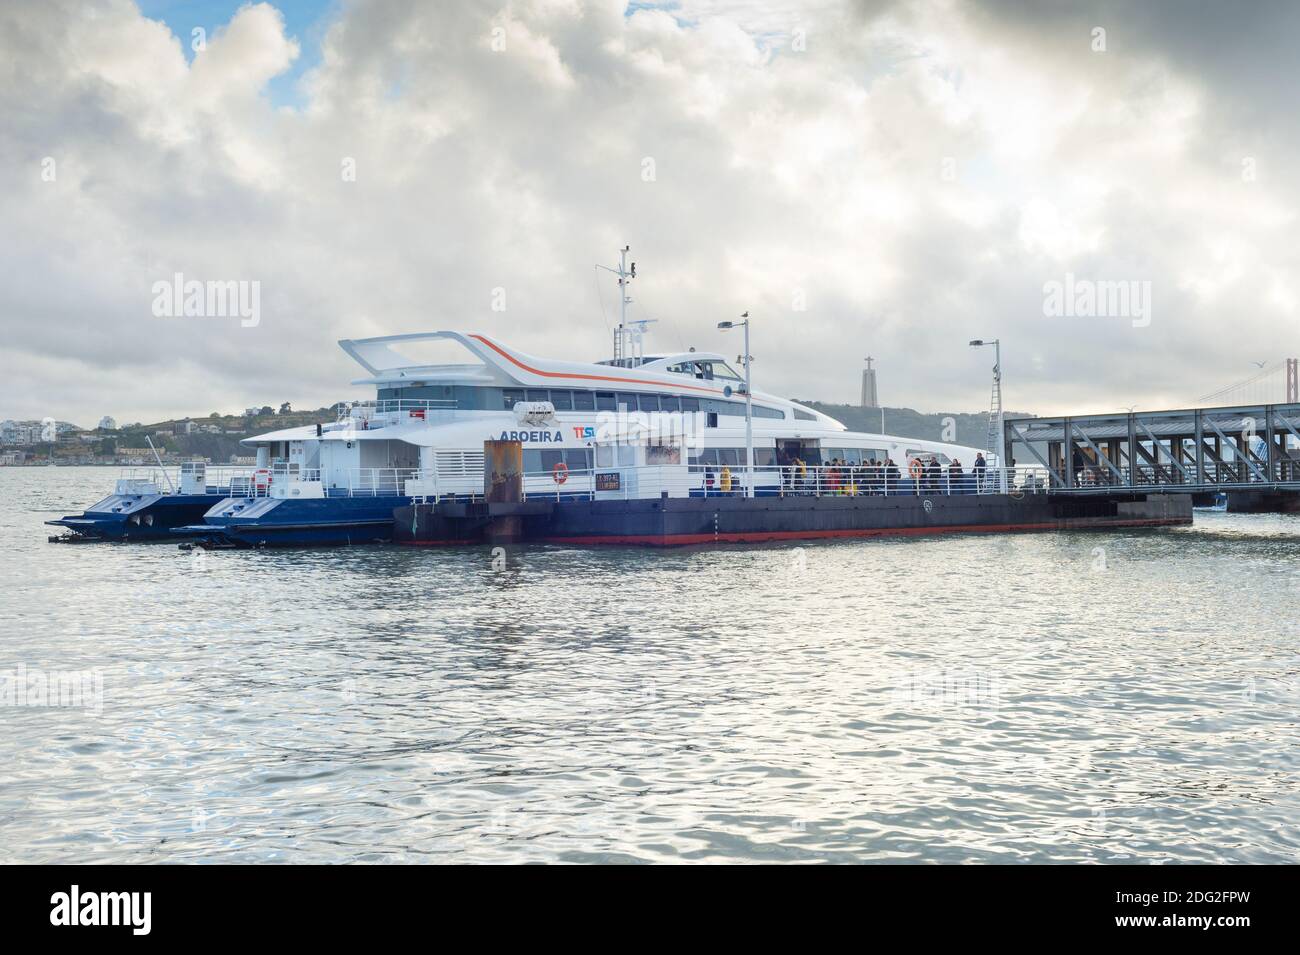 LISBONNE, PORTUGAL - 28 JANVIER 2020 : personnes embarquant à bord d'un navire à passagers moderne sur un quai à Lisbonne, Portugal Banque D'Images